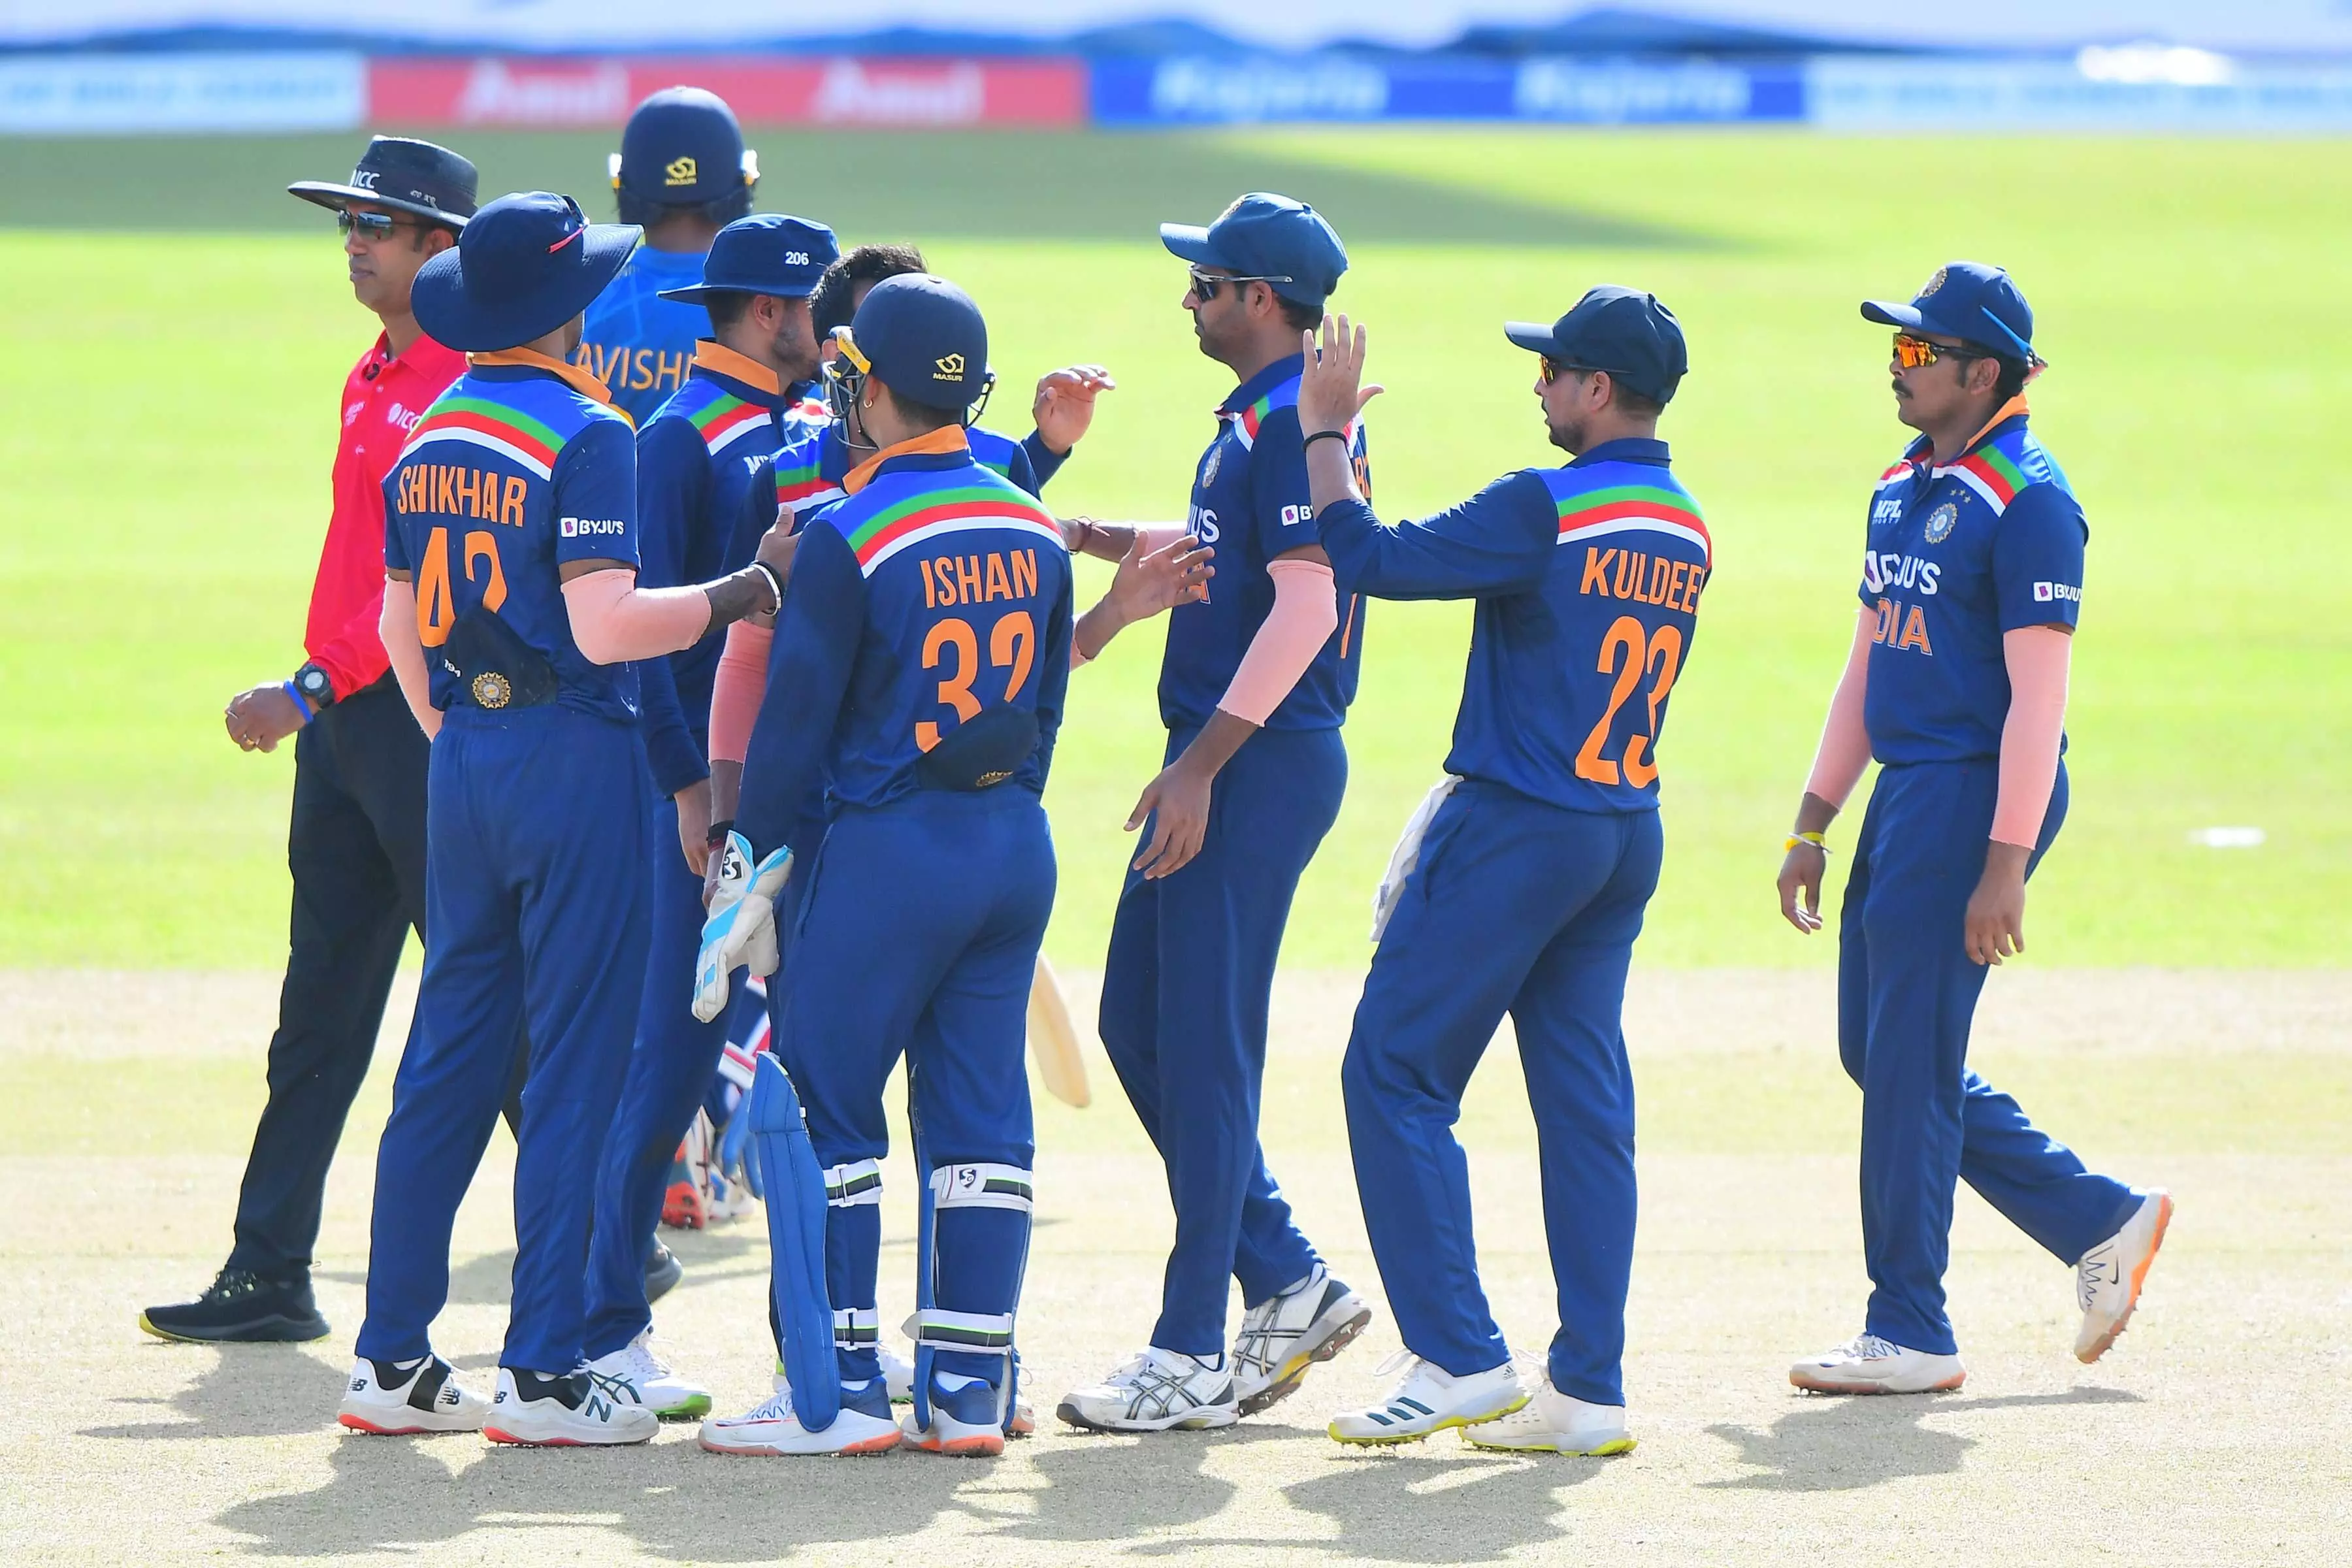 India vs Sri Lanka 2nd ODI : श्रीलंका ने टॉस जीतकर , पहले बल्लेबाजी कर भारत को 176 रनों का लक्ष्य दिया